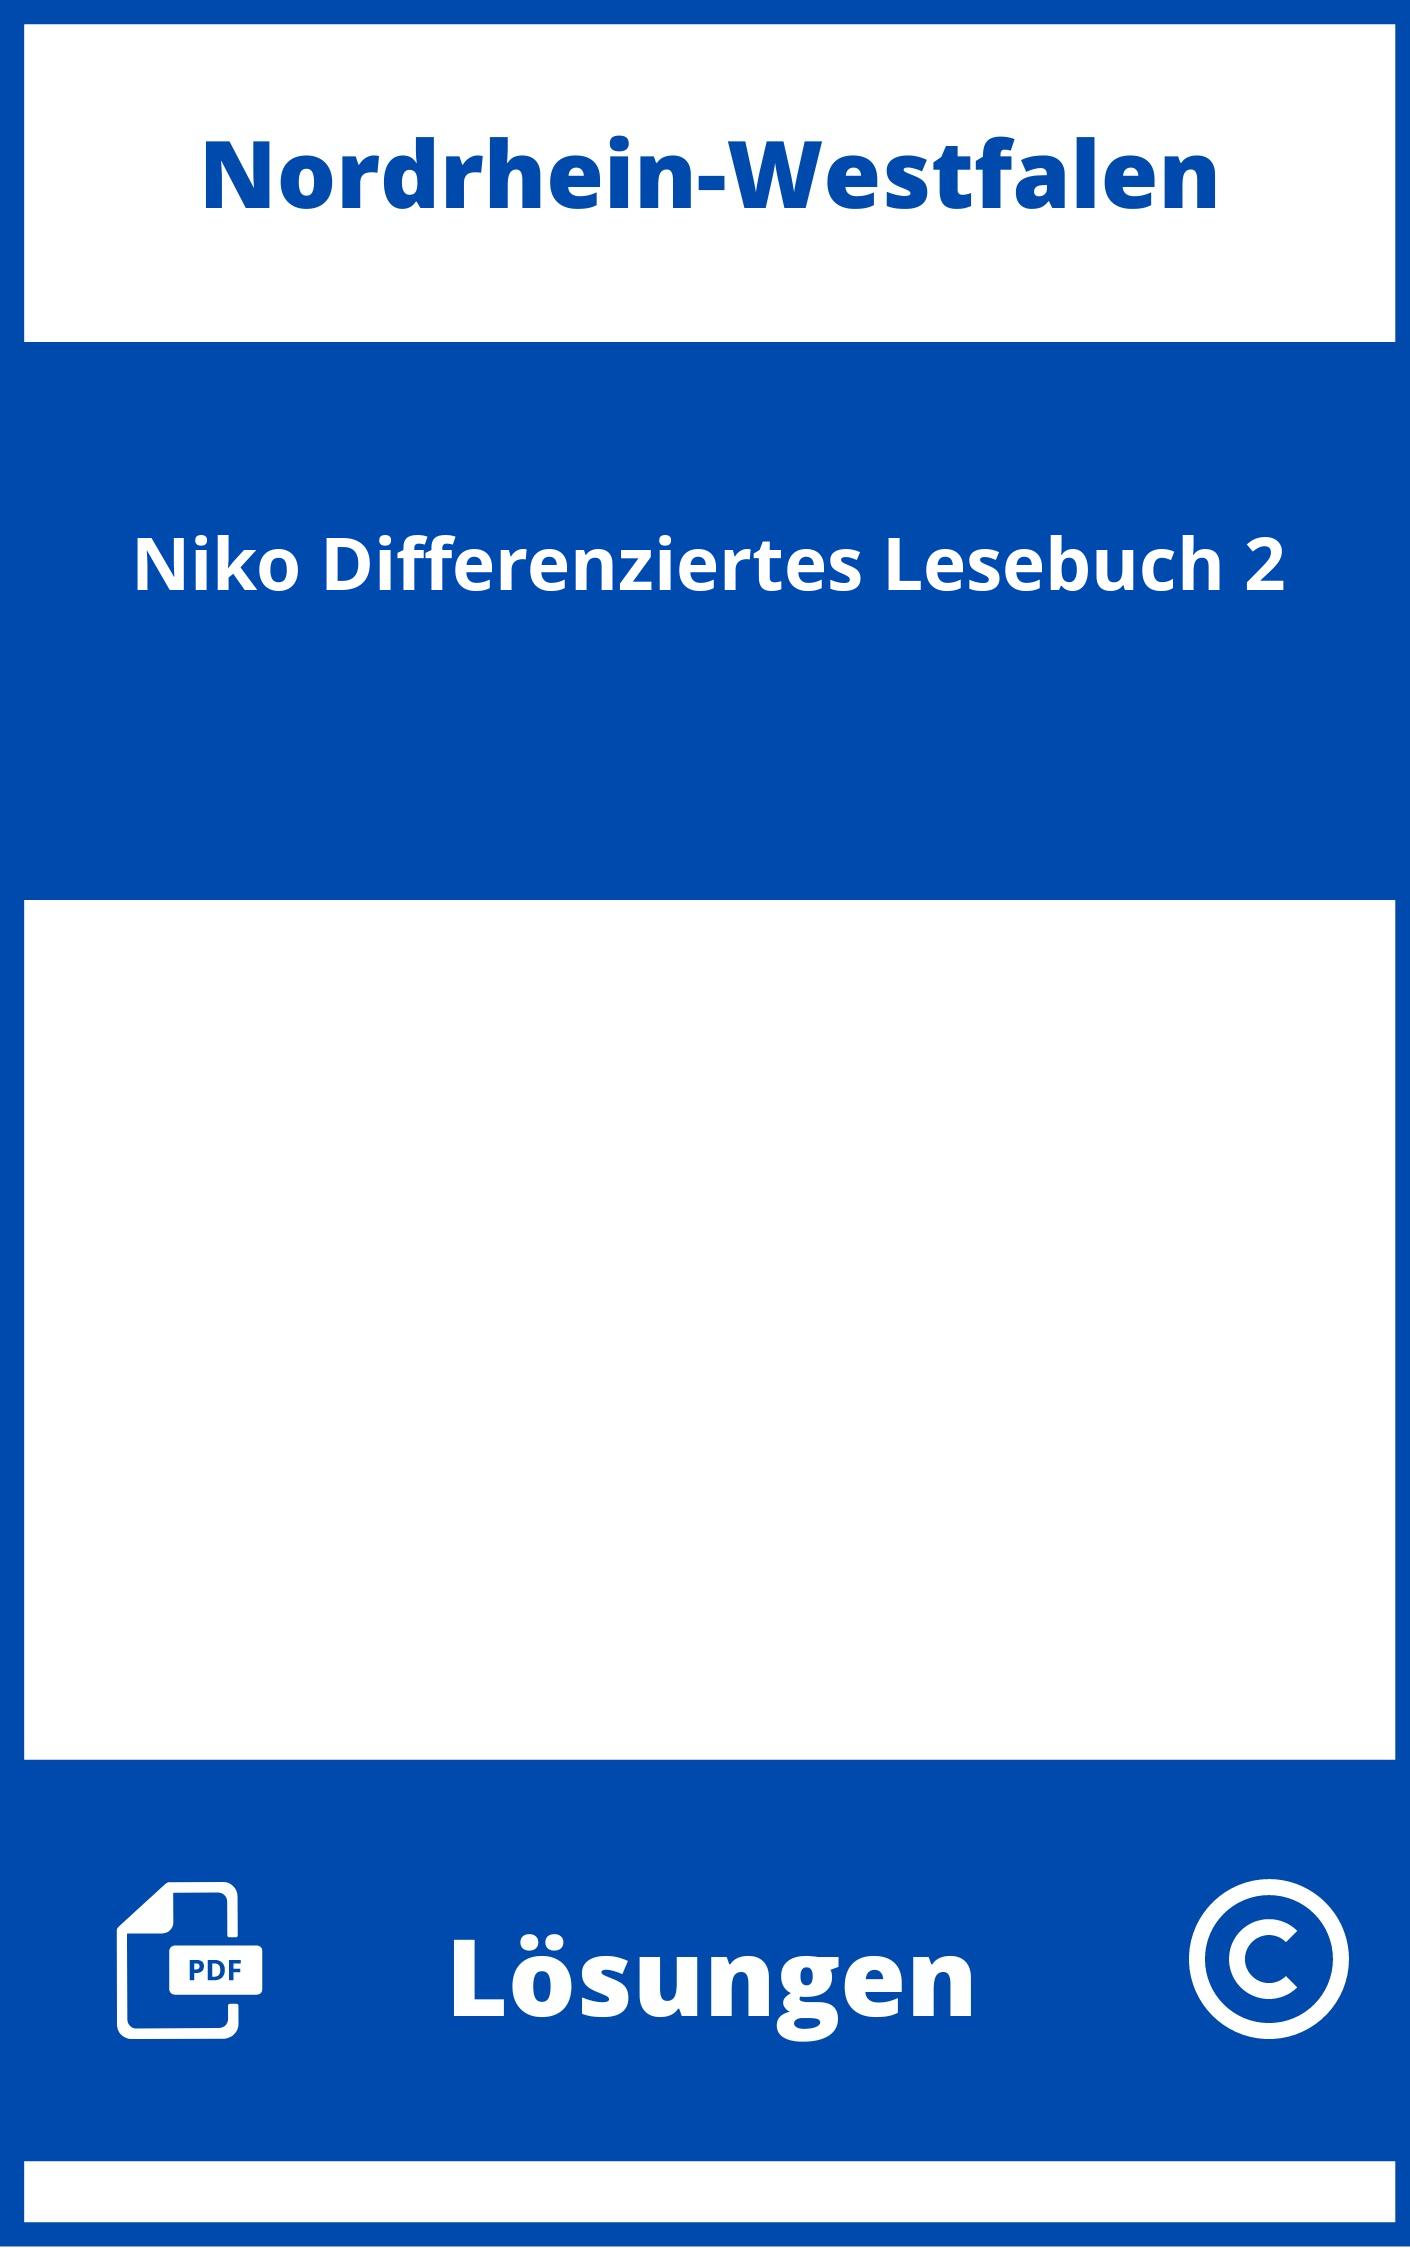 Niko Differenziertes Lesebuch 2 Lösungen NRW PDF